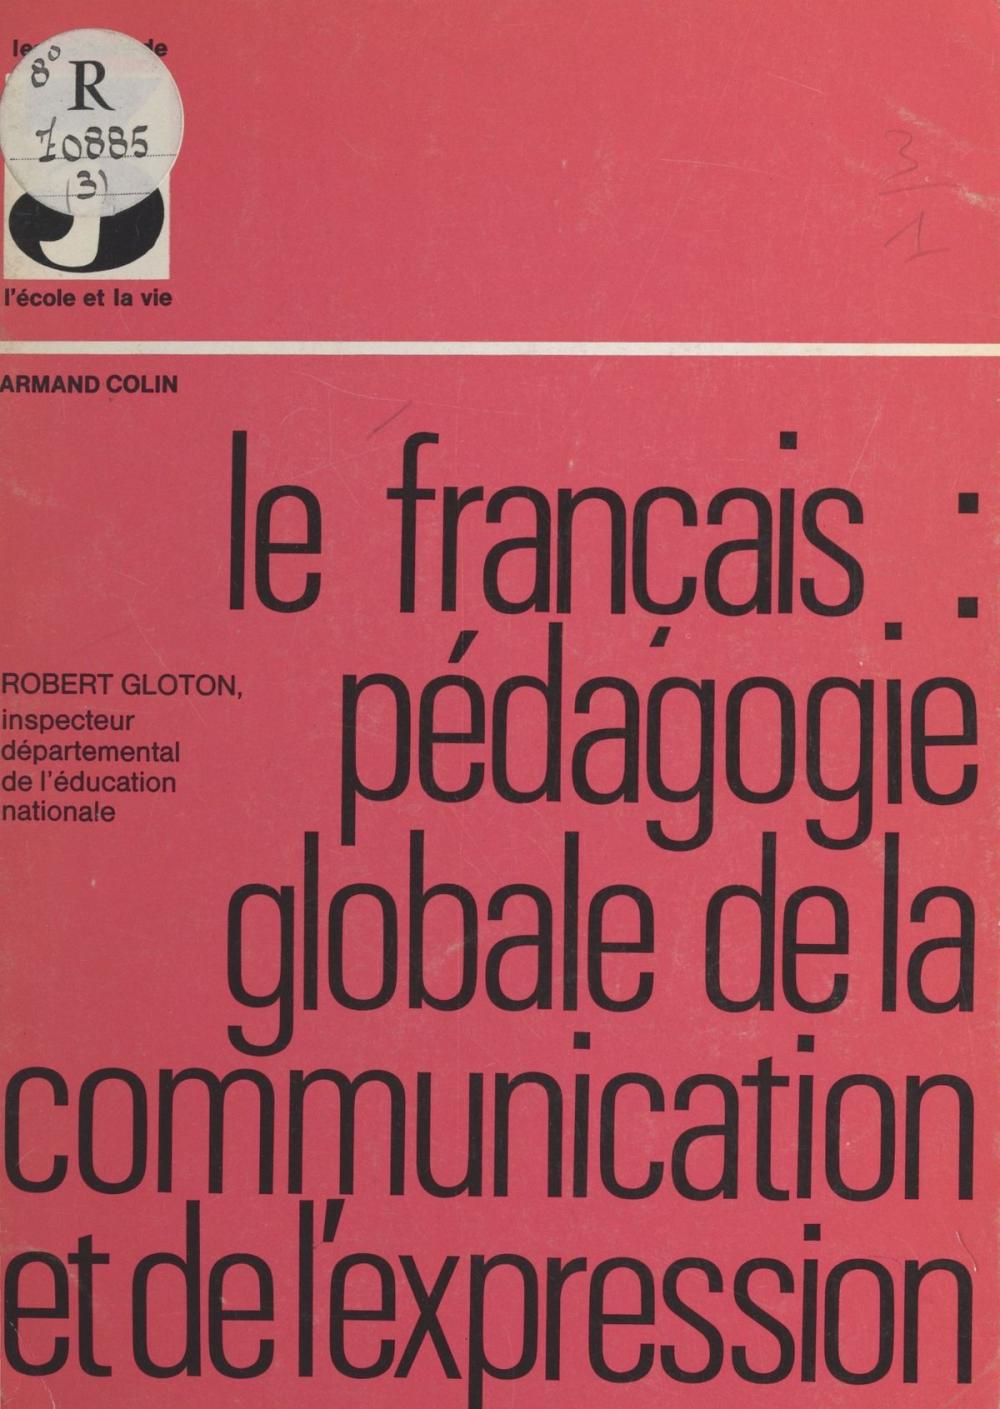 Big bigCover of Le français, pédagogie globale de la communication et de l'expression